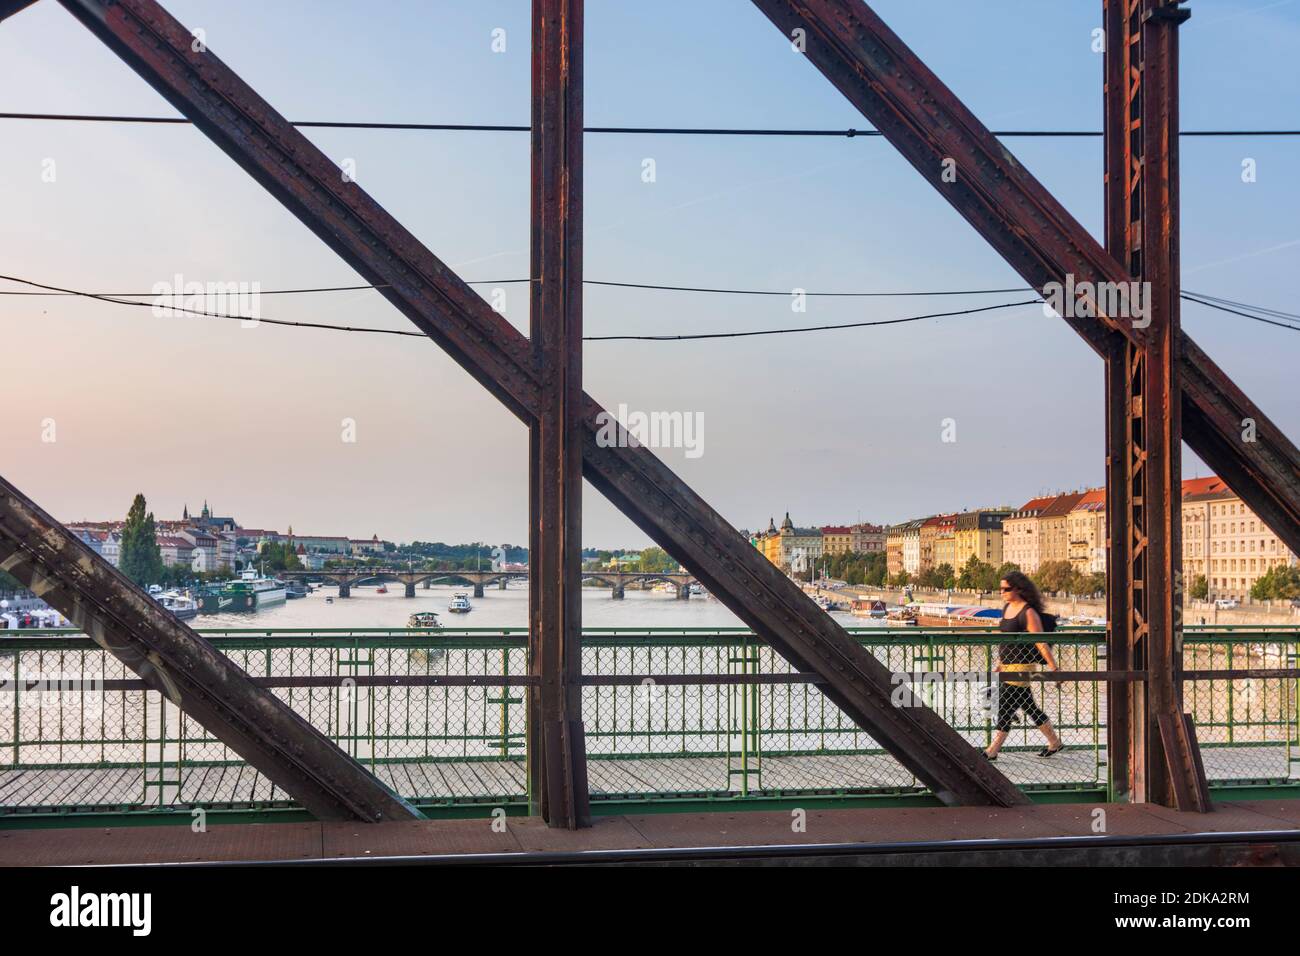 Praha, río Vltava (Moldau), puente ferroviario en Vysehrad, vista al norte, persona caminando en Vltava, Moldau, Praha, Prag, Praga, Checo Foto de stock